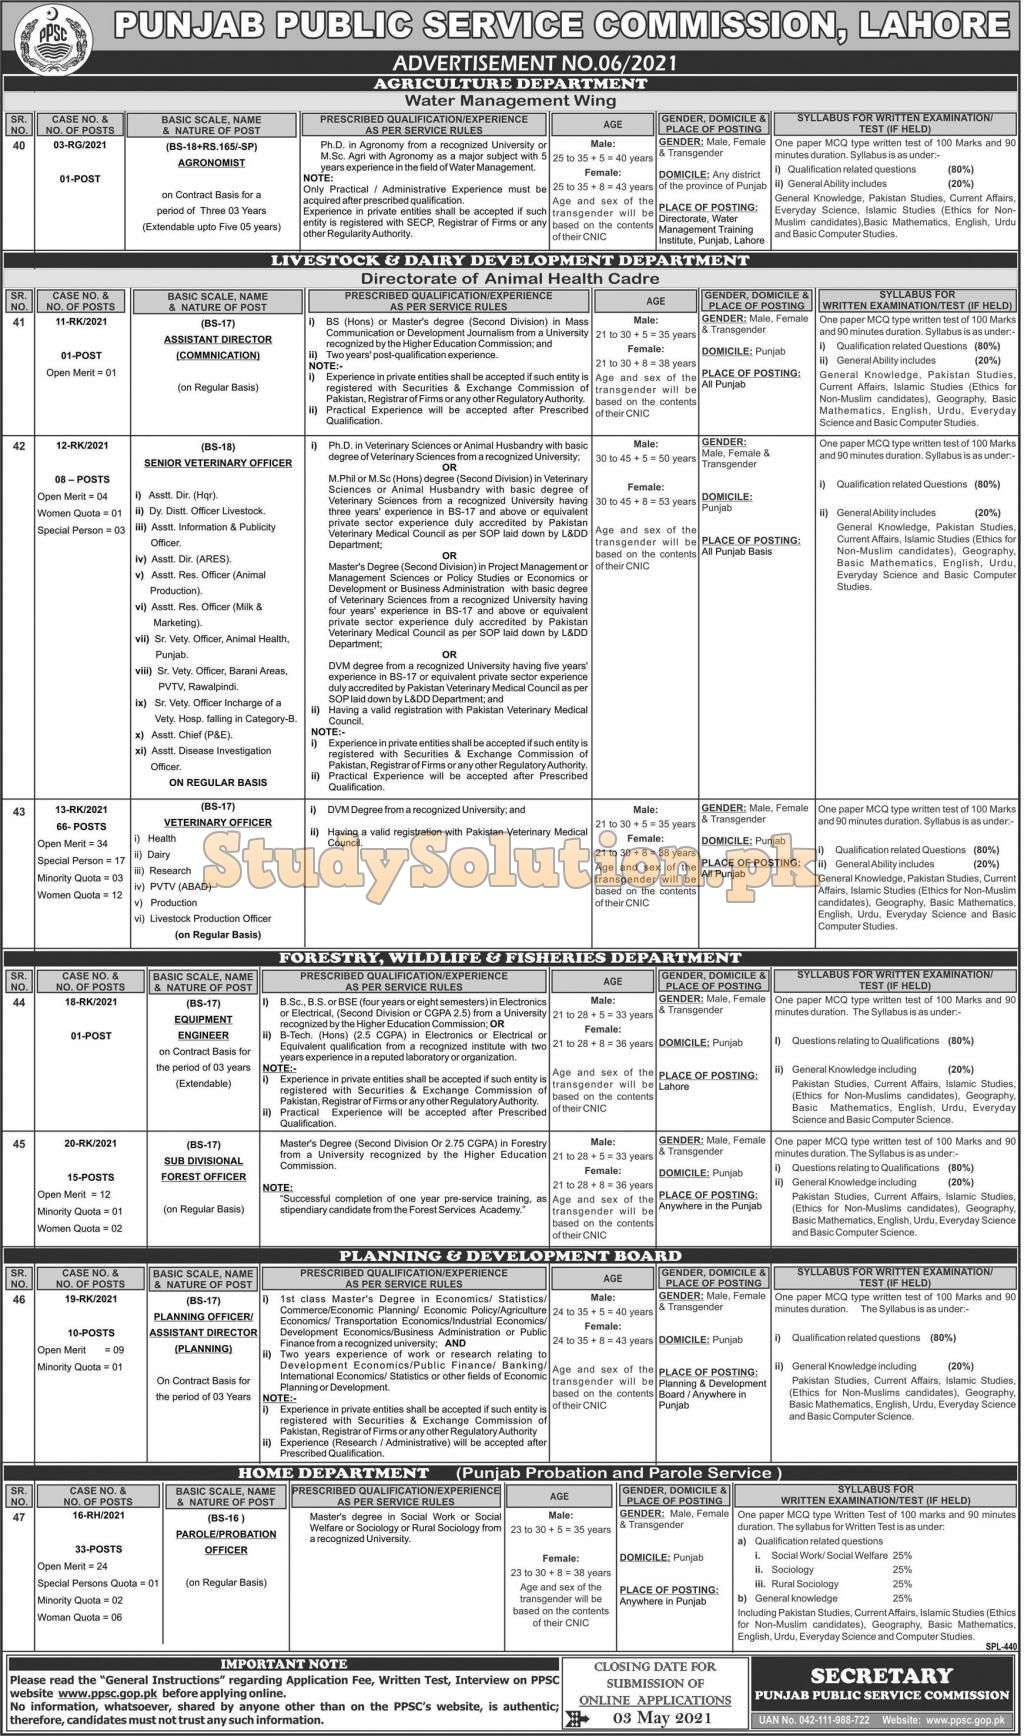 PPSC Punjab Public Service Commission Latest Jobs 2021 Advertisement No 06/2021